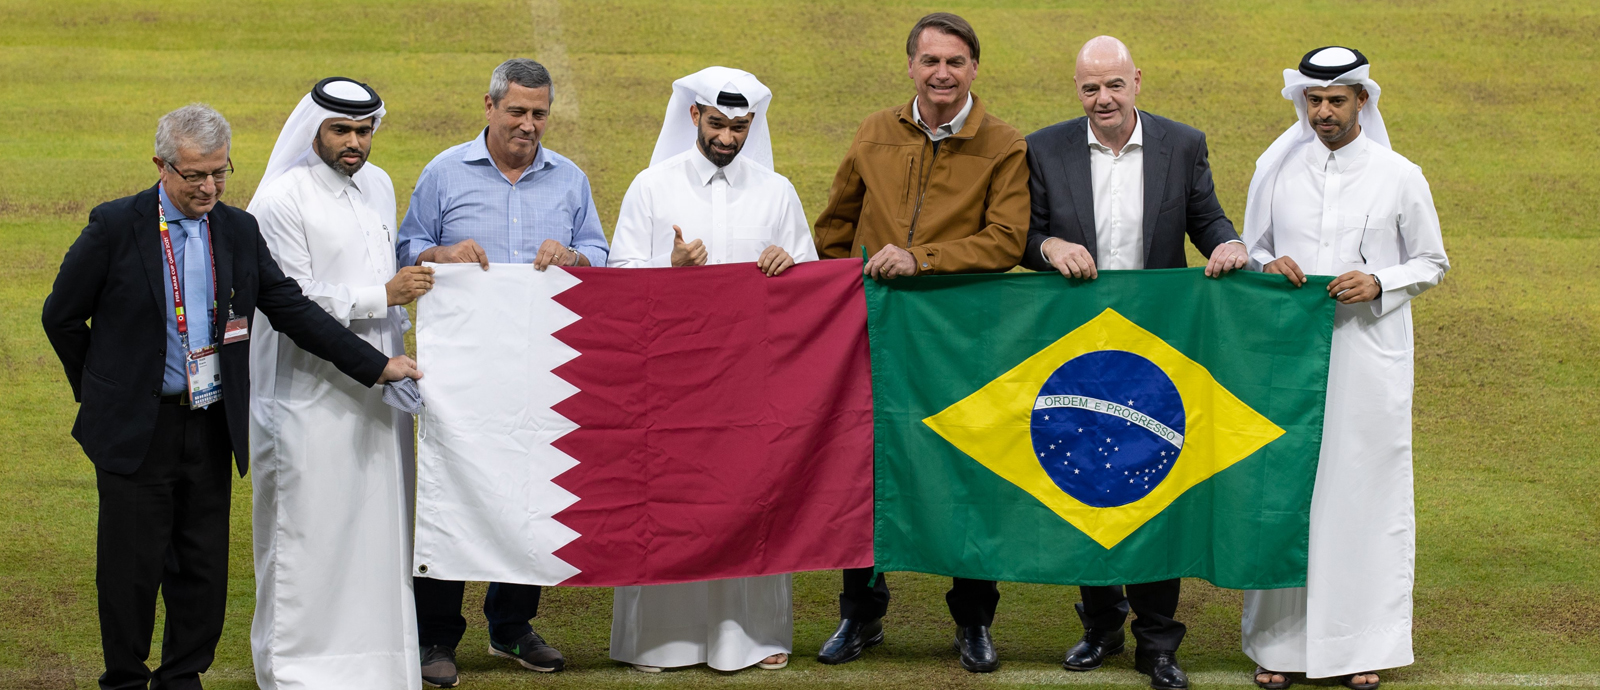 رئيس البرازيل ورئيس الاتحاد الدولي لكرة القدم يزوران استاد لوسيل